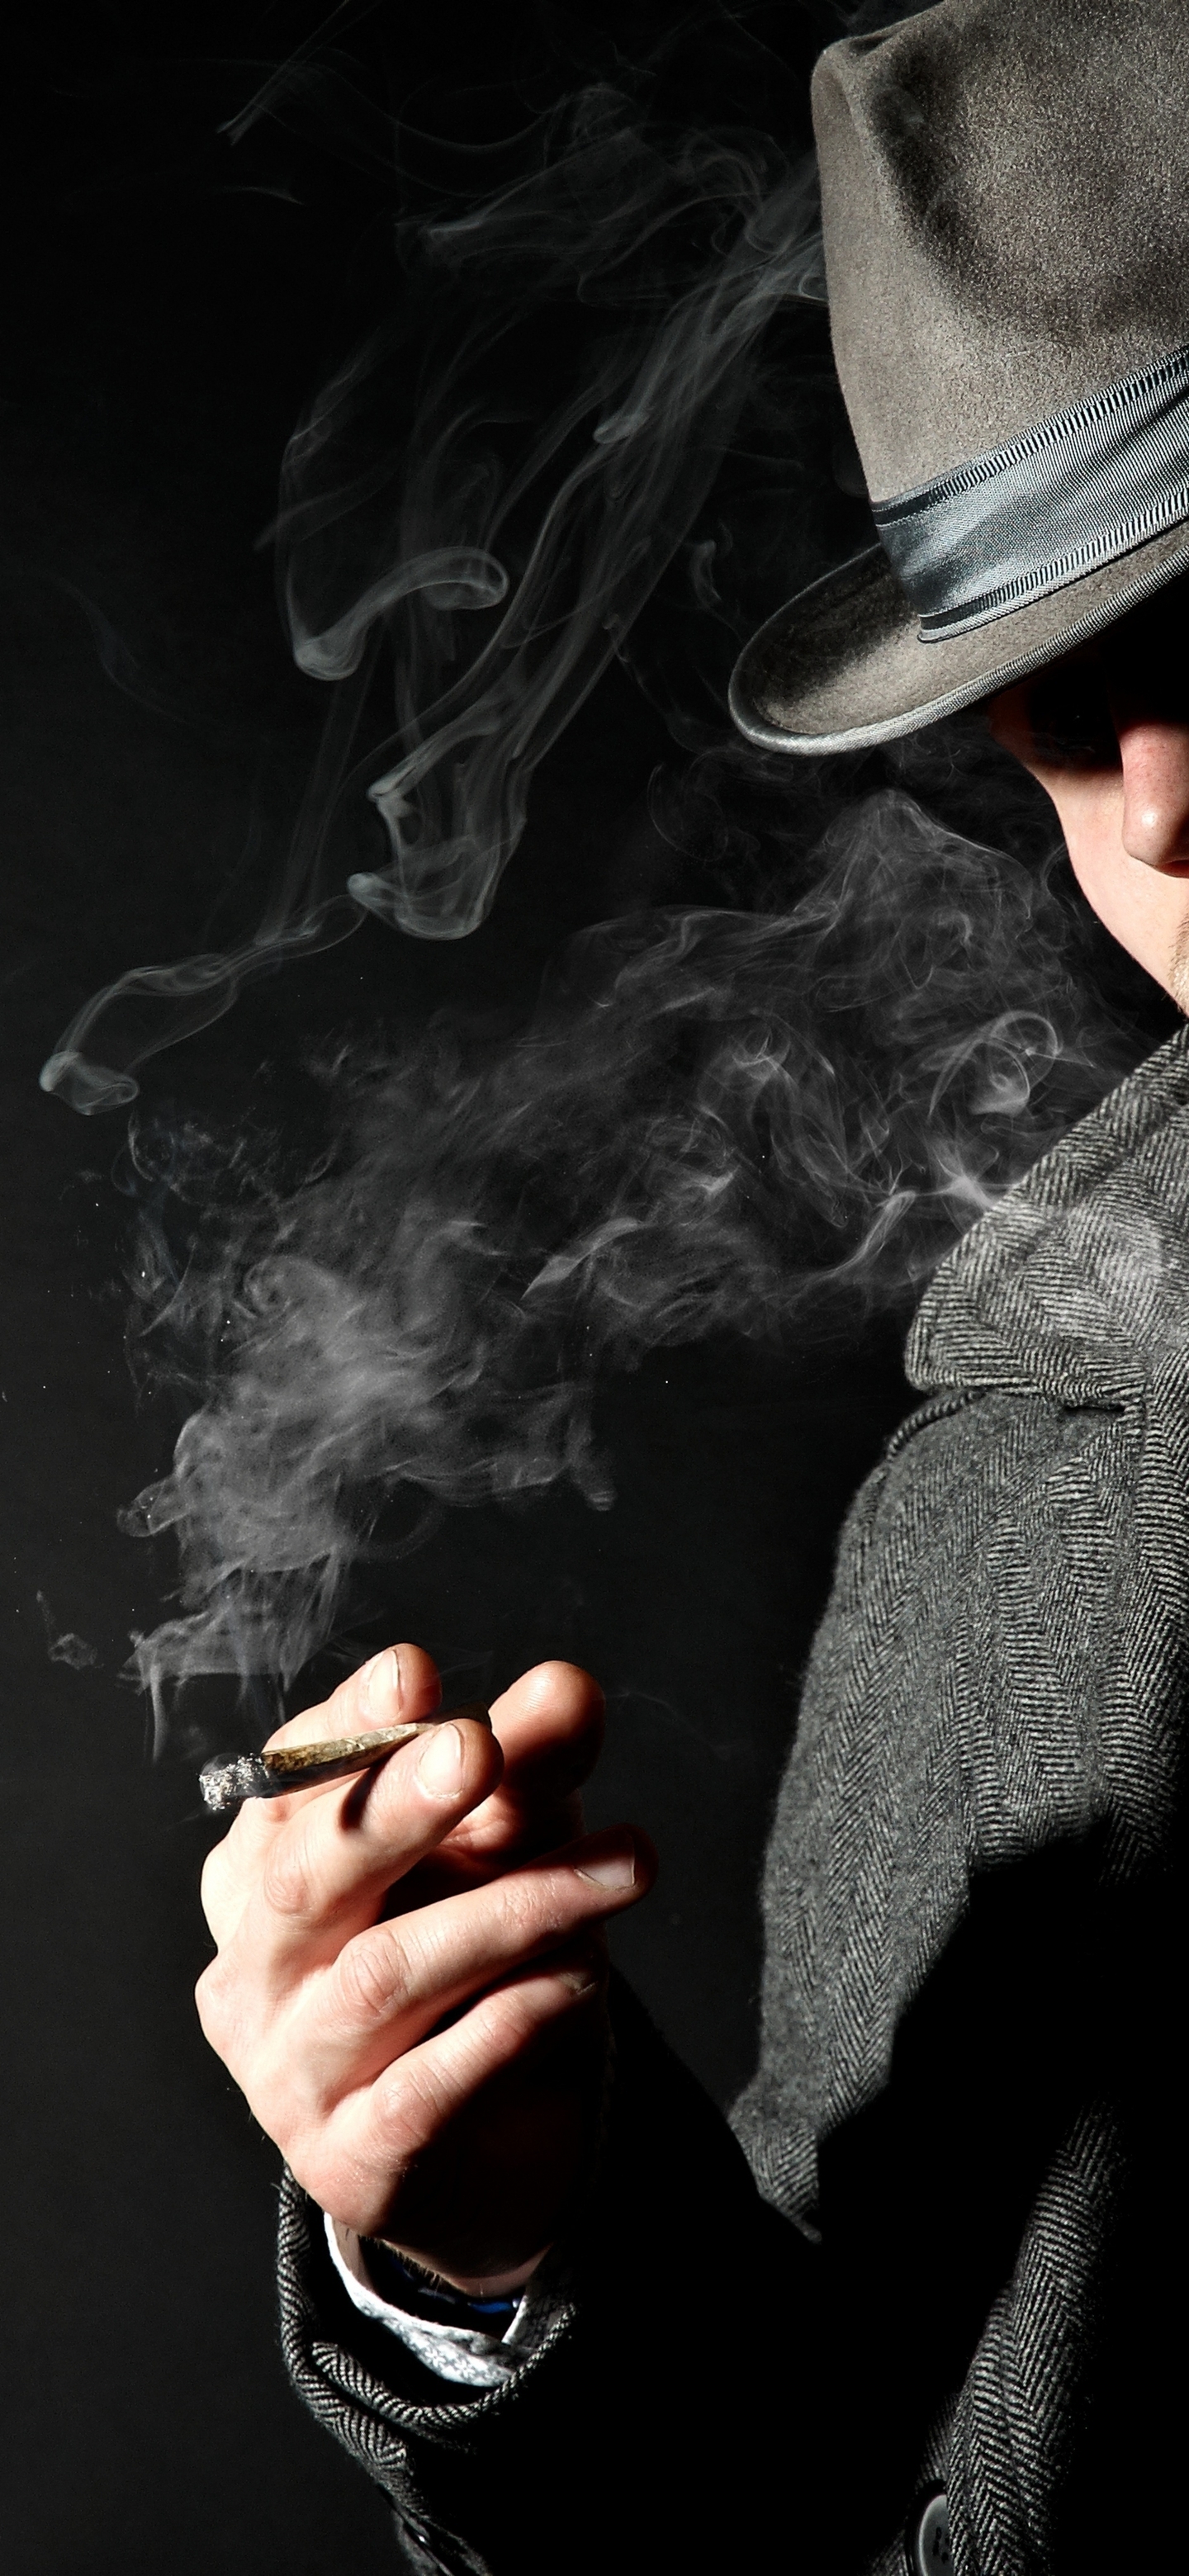 Картинка: Мужчина, пальто, галстук, шляпа, курит, сигара, дым